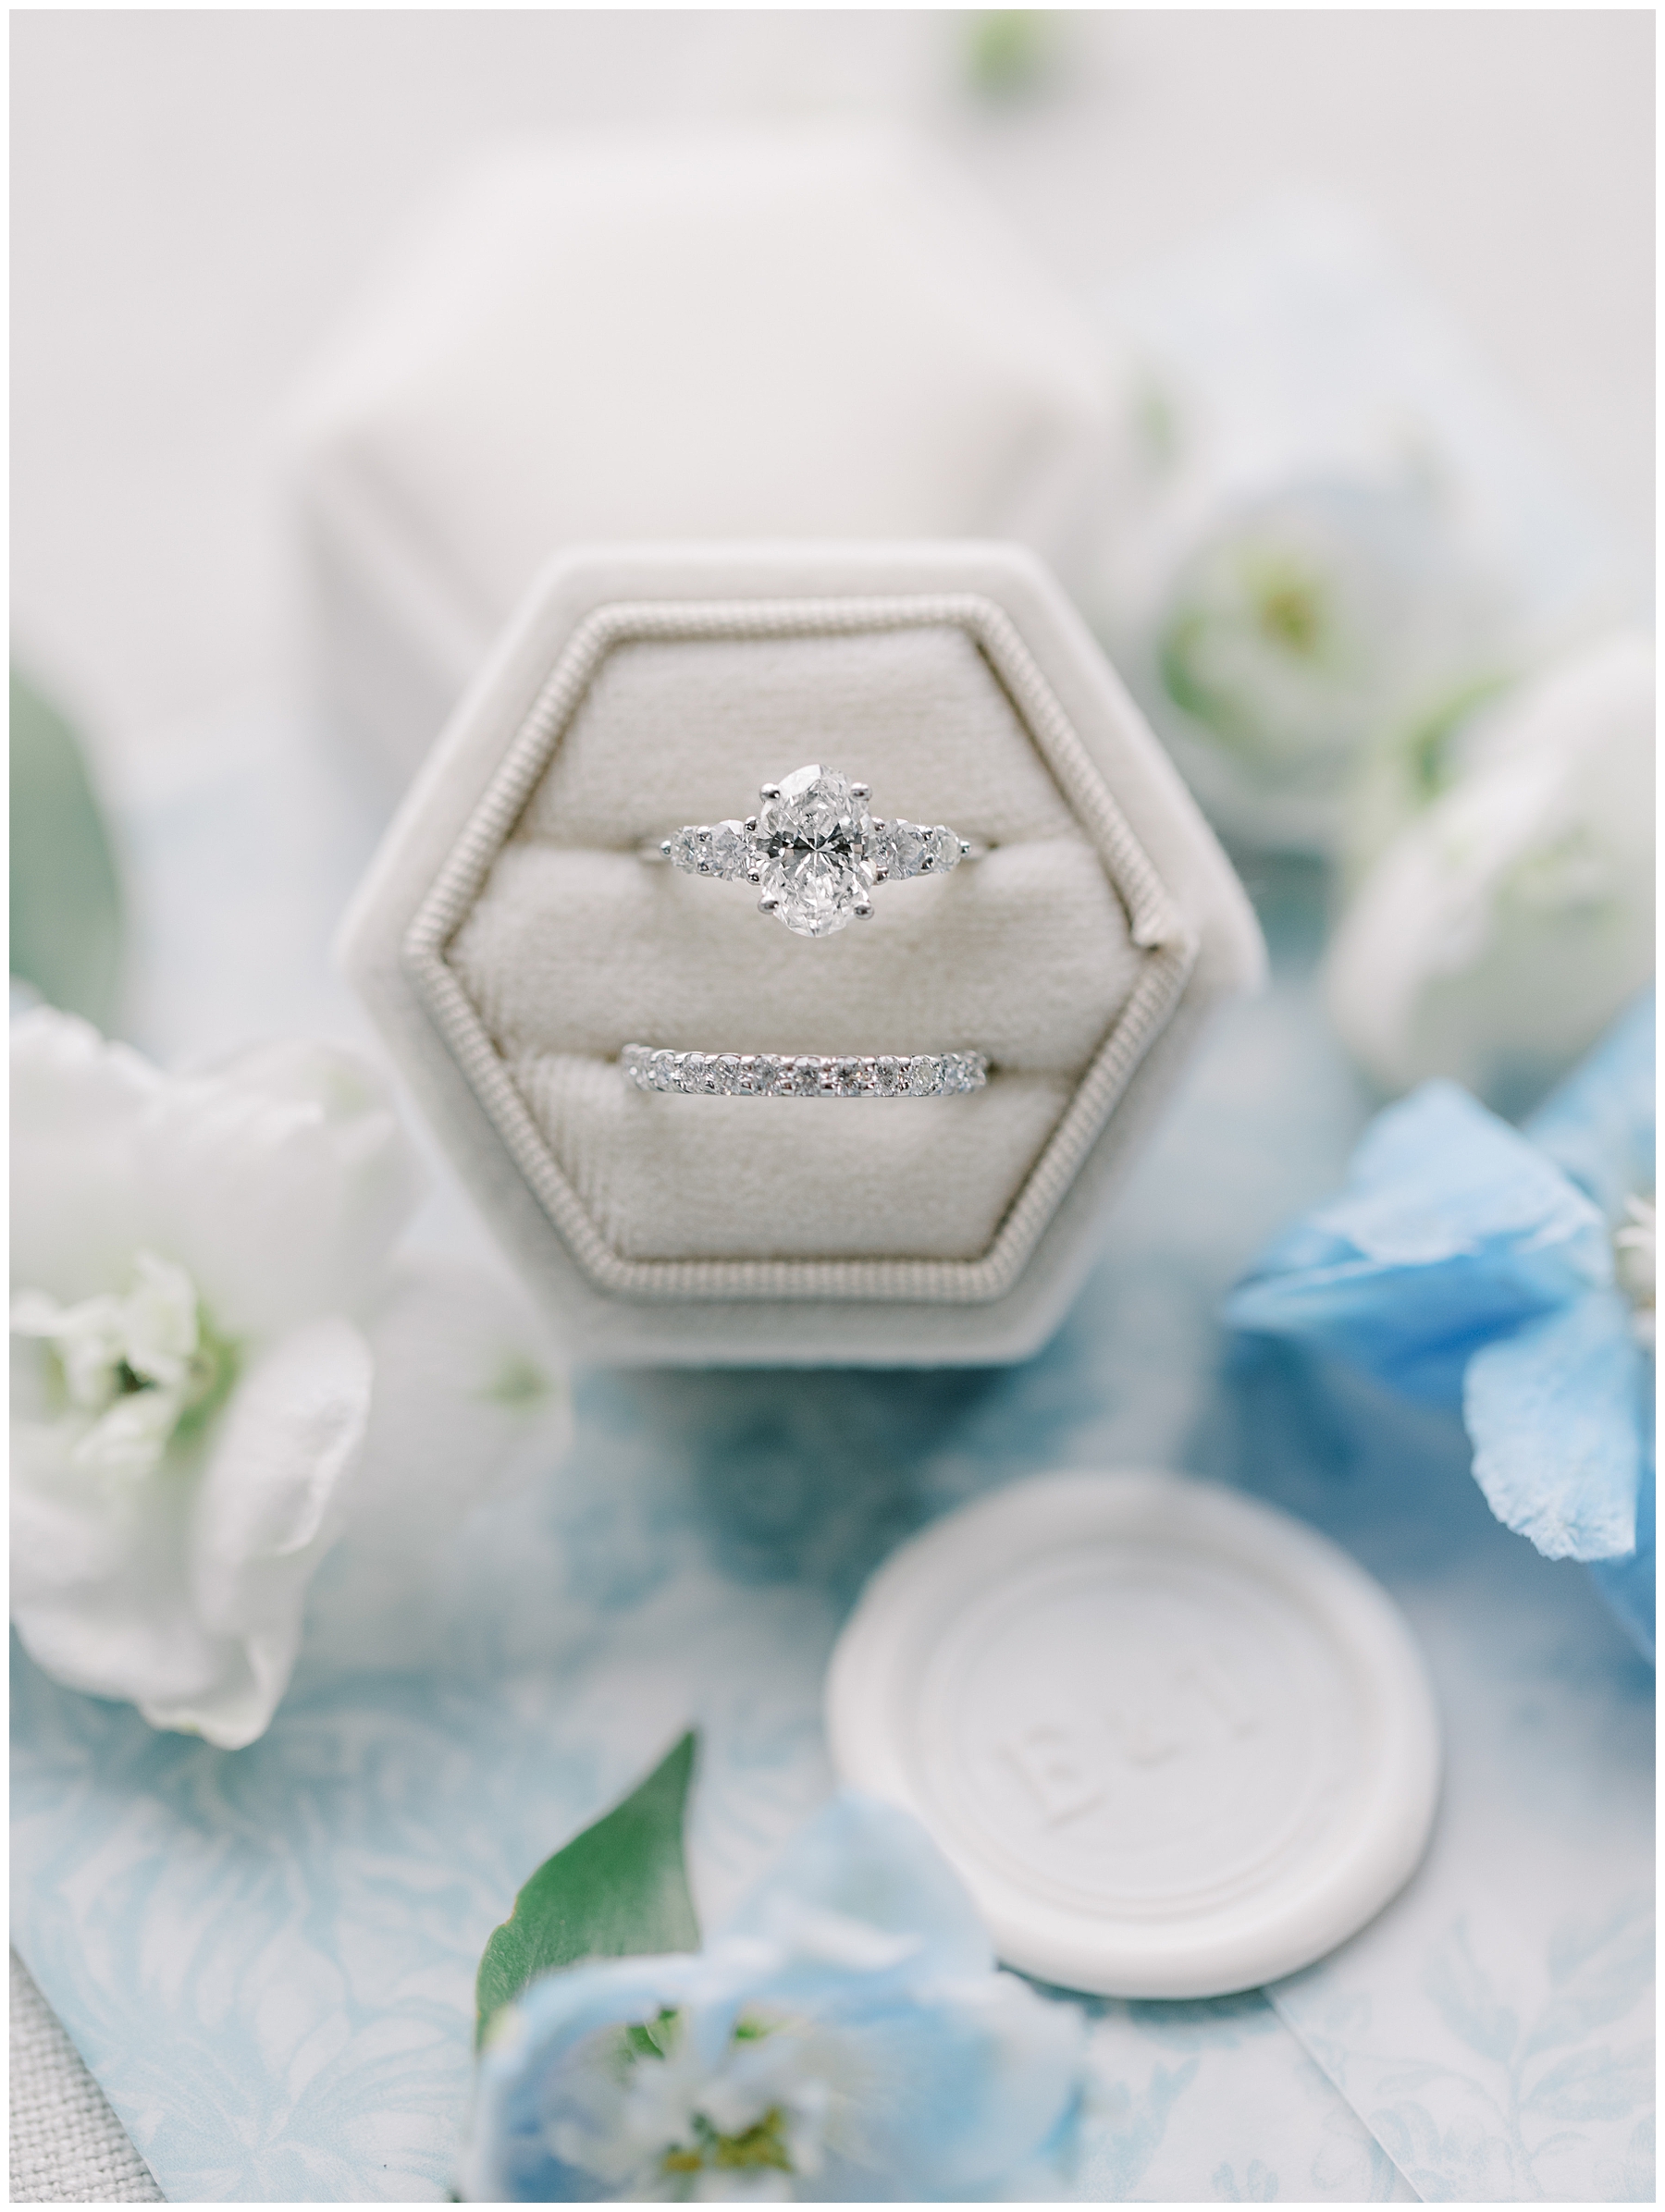 wedding ring in ring box